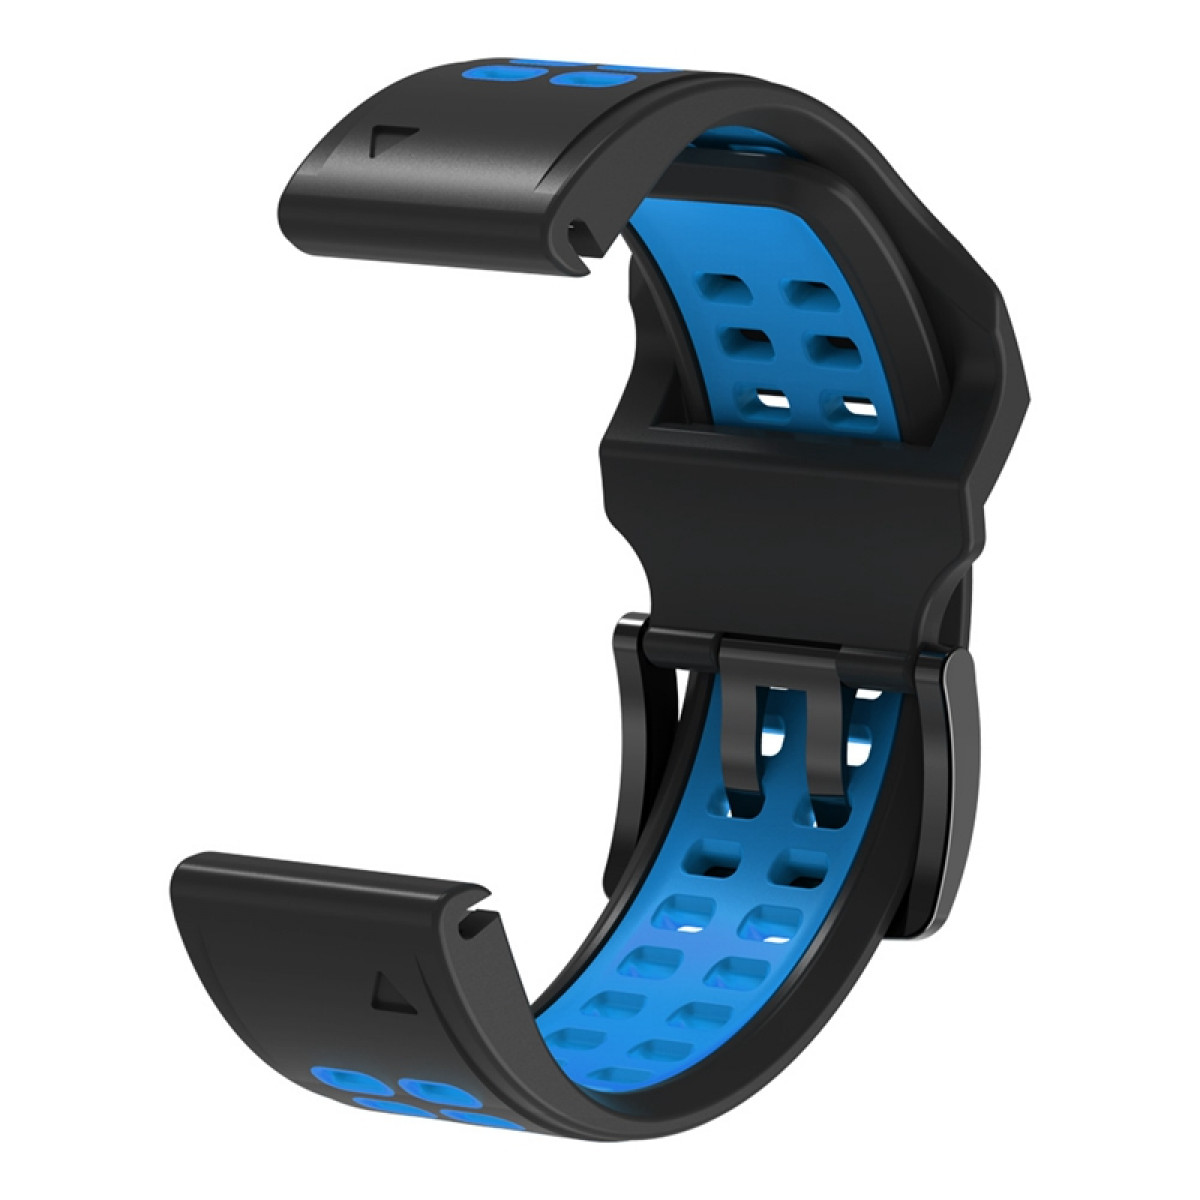 INF Uhrarmband, Uhren + Fenix7/6/5 Garmin, (22mm), Ersatzarmband, Blau Schwarz